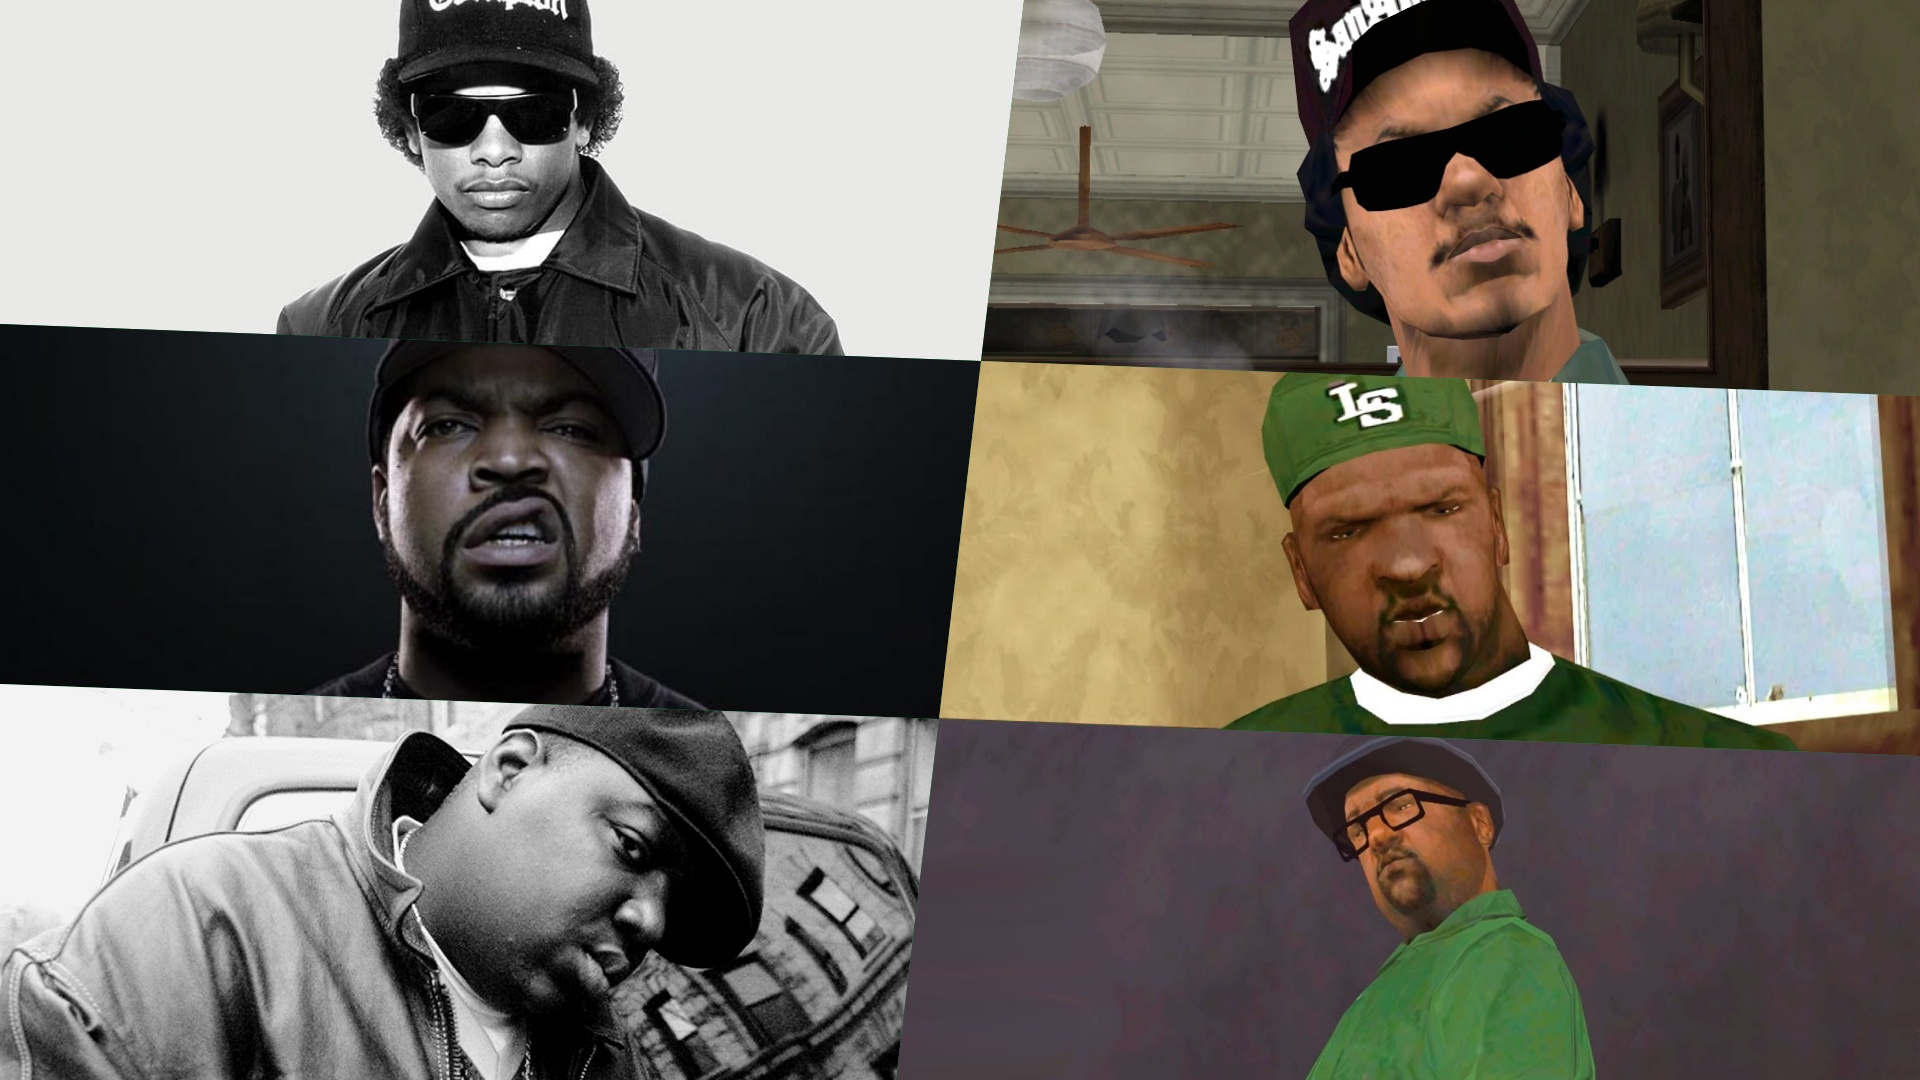 The Hip-Hop Thugsta - STRAIGHT OUTTA SAN ANDREAS O jogo GTA San Andreas fez  bastante sucesso em meio aos amantes do Hip-Hop, o fato de envolver  rappers, gangues, retratar fatos reais com